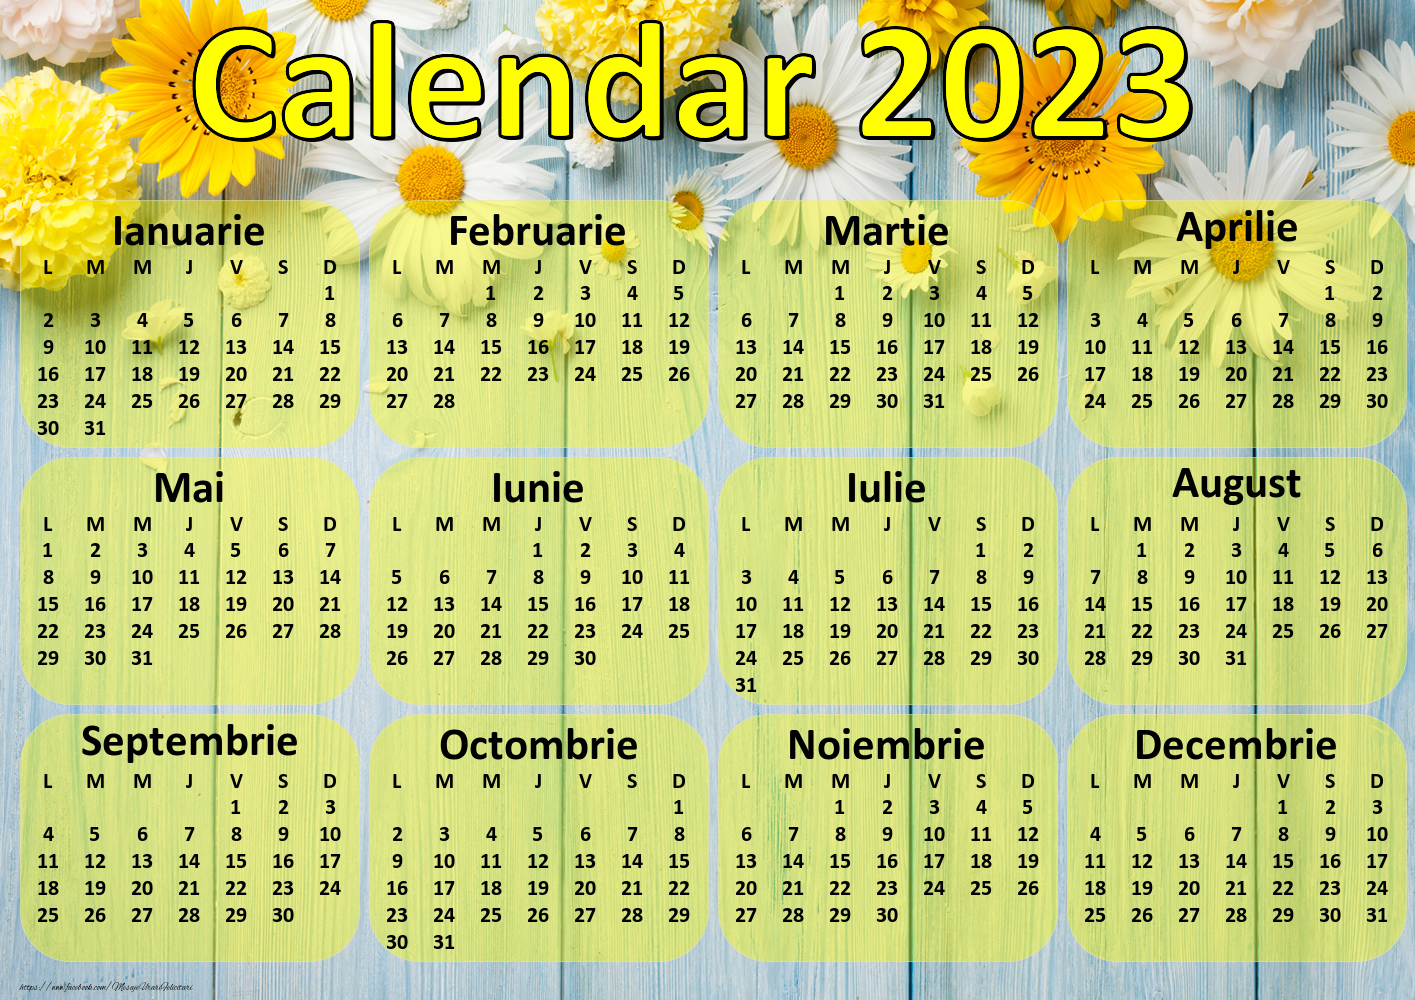 Calendare Calendar 2023 - Flori - Model 0037